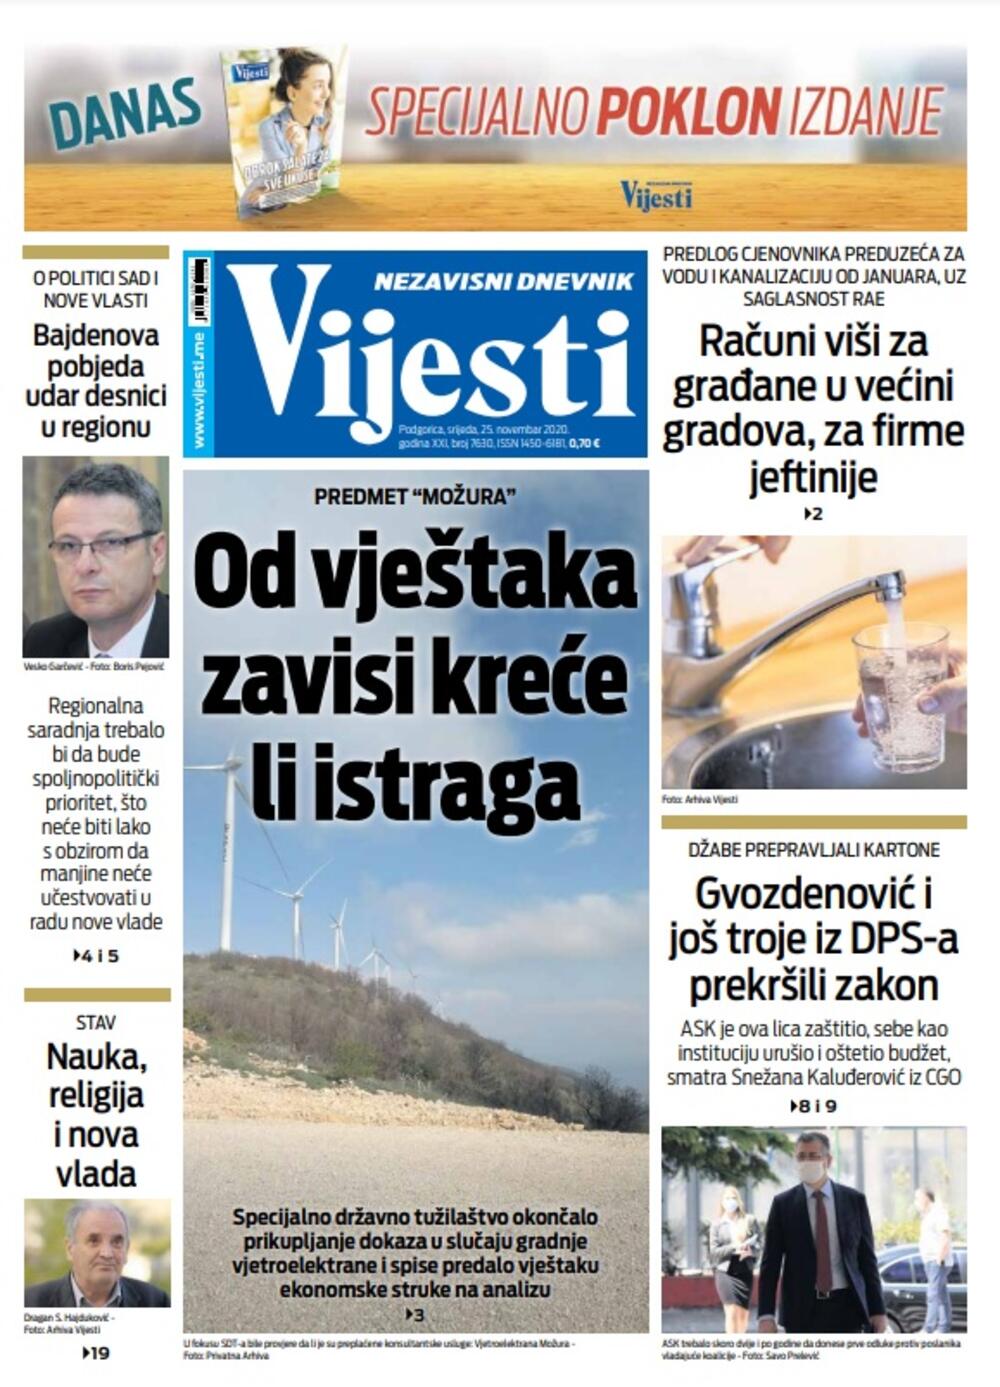 Naslovna strana "Vijesti" za srijedu 25. novembar 2020. godine, Foto: Vijesti